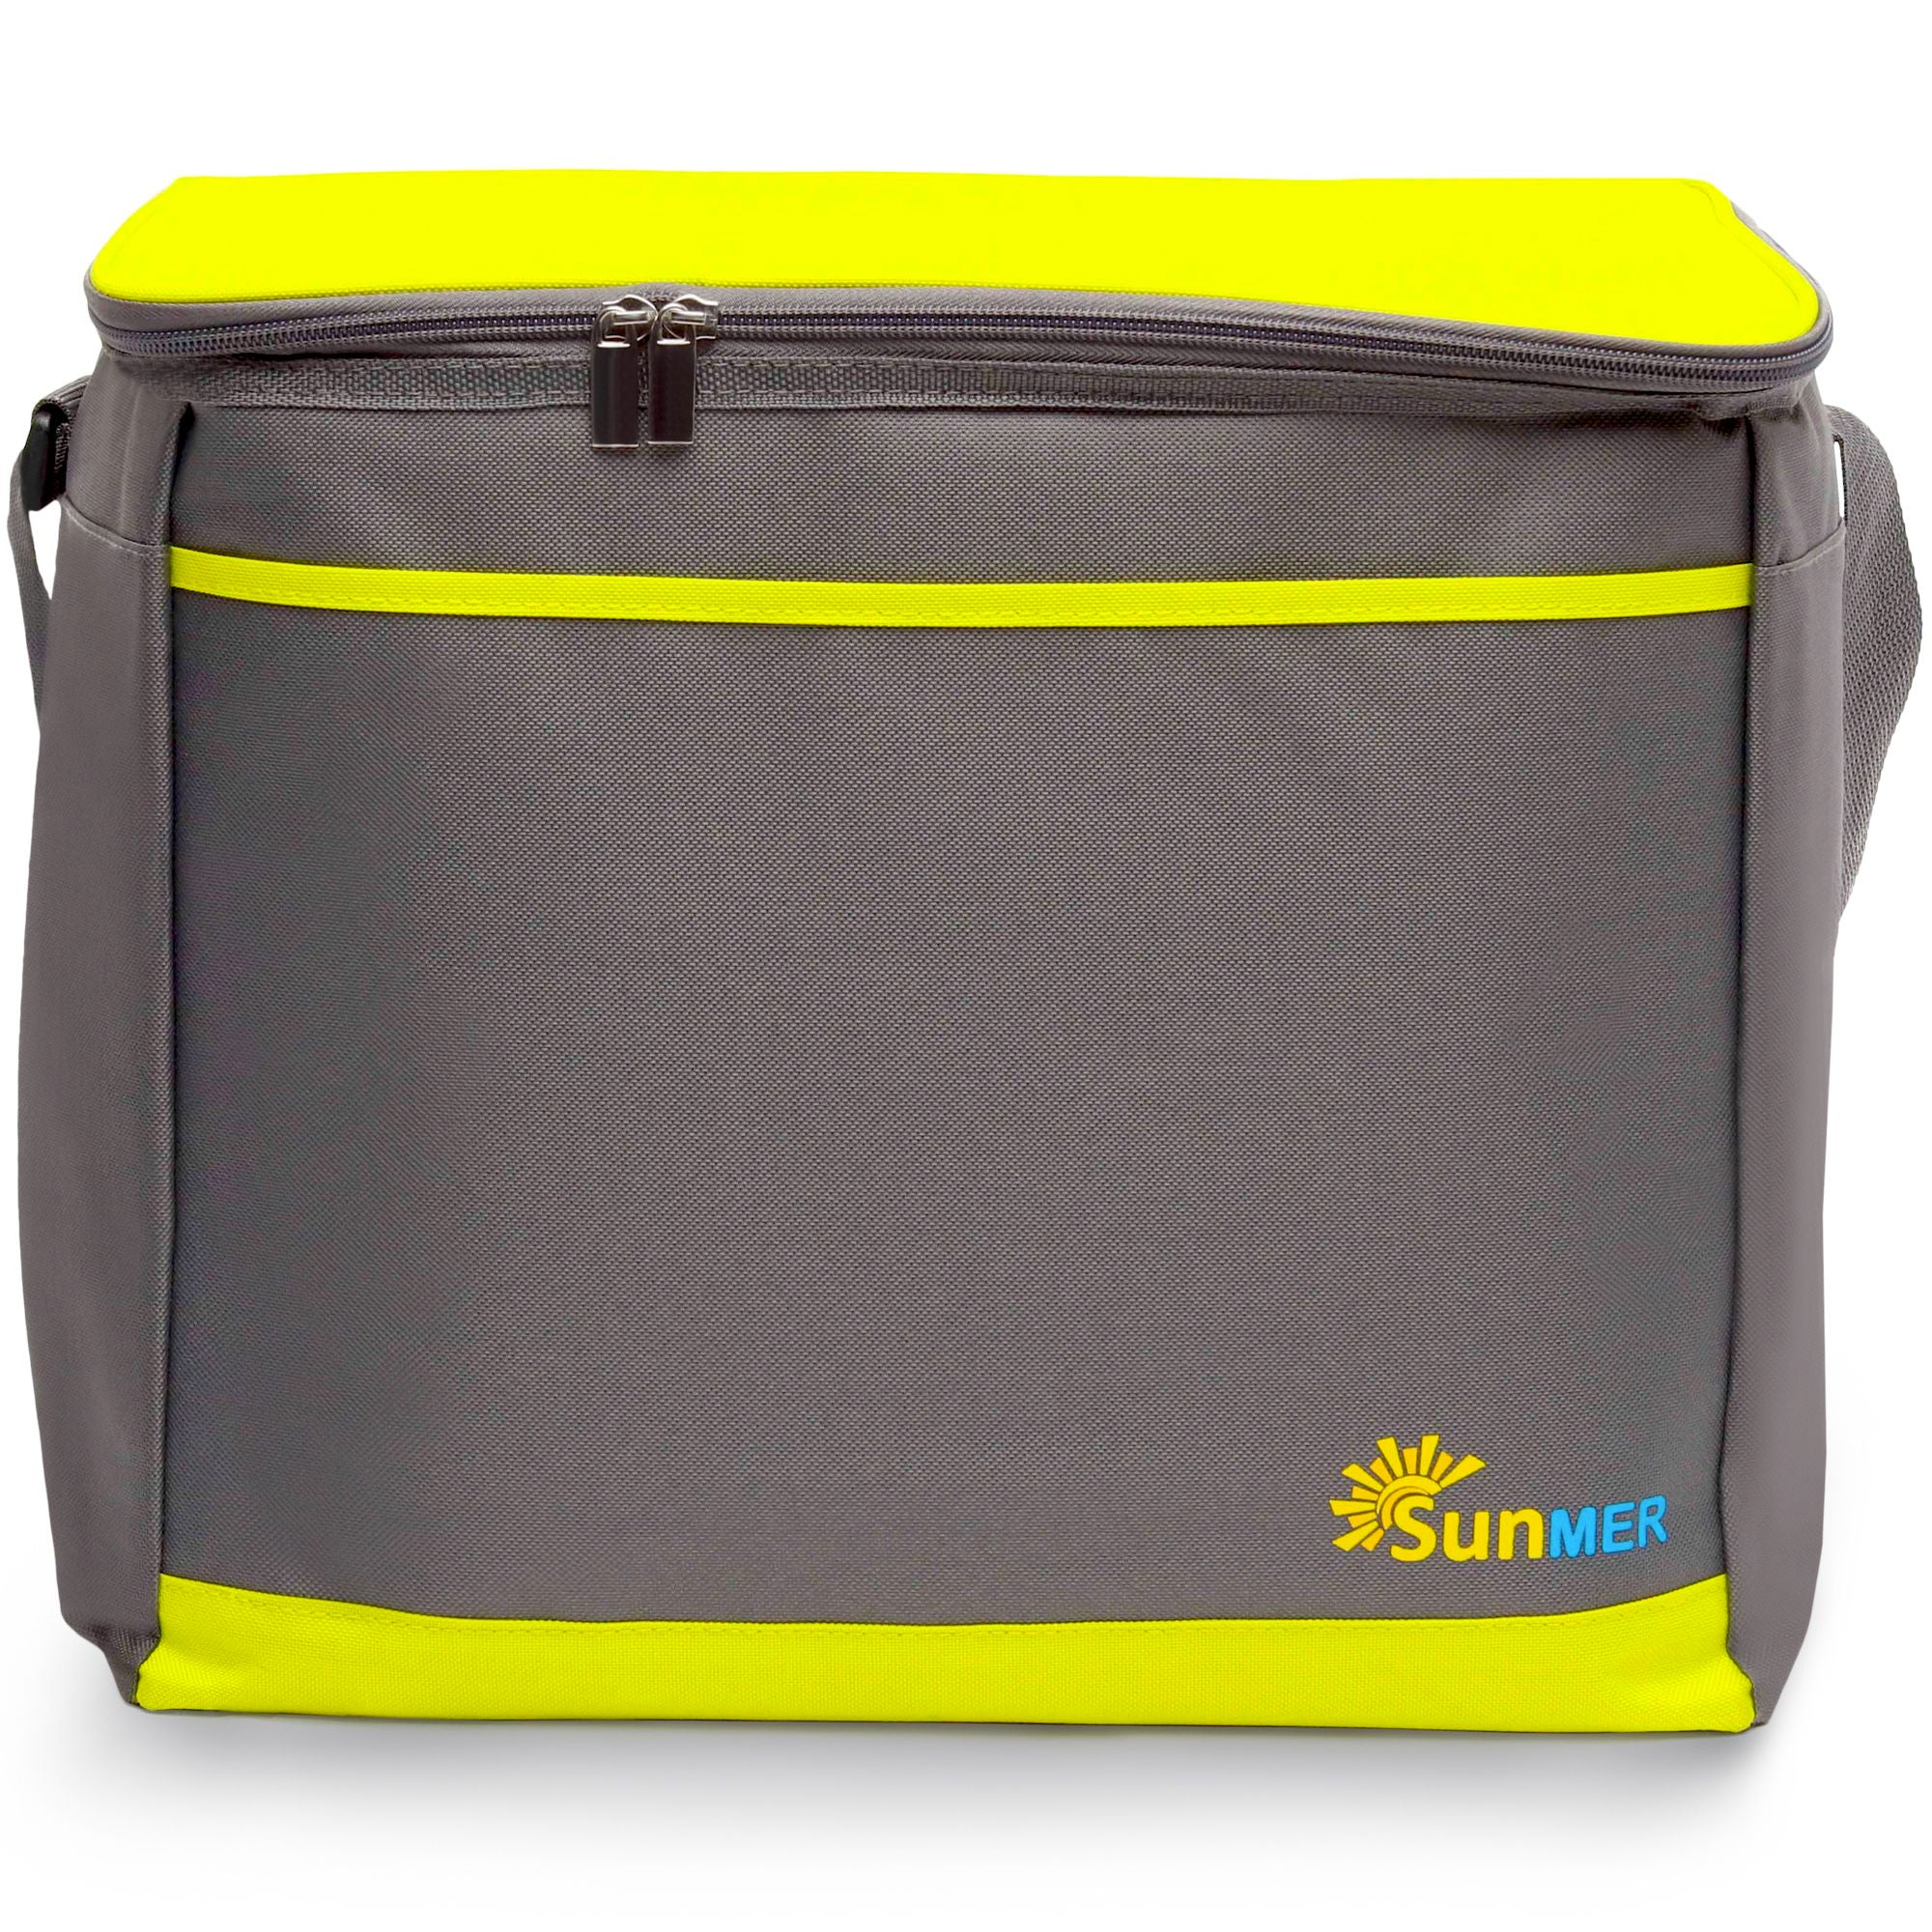 30L Cooler Bag With Shoulder Strap - Grey & Lime